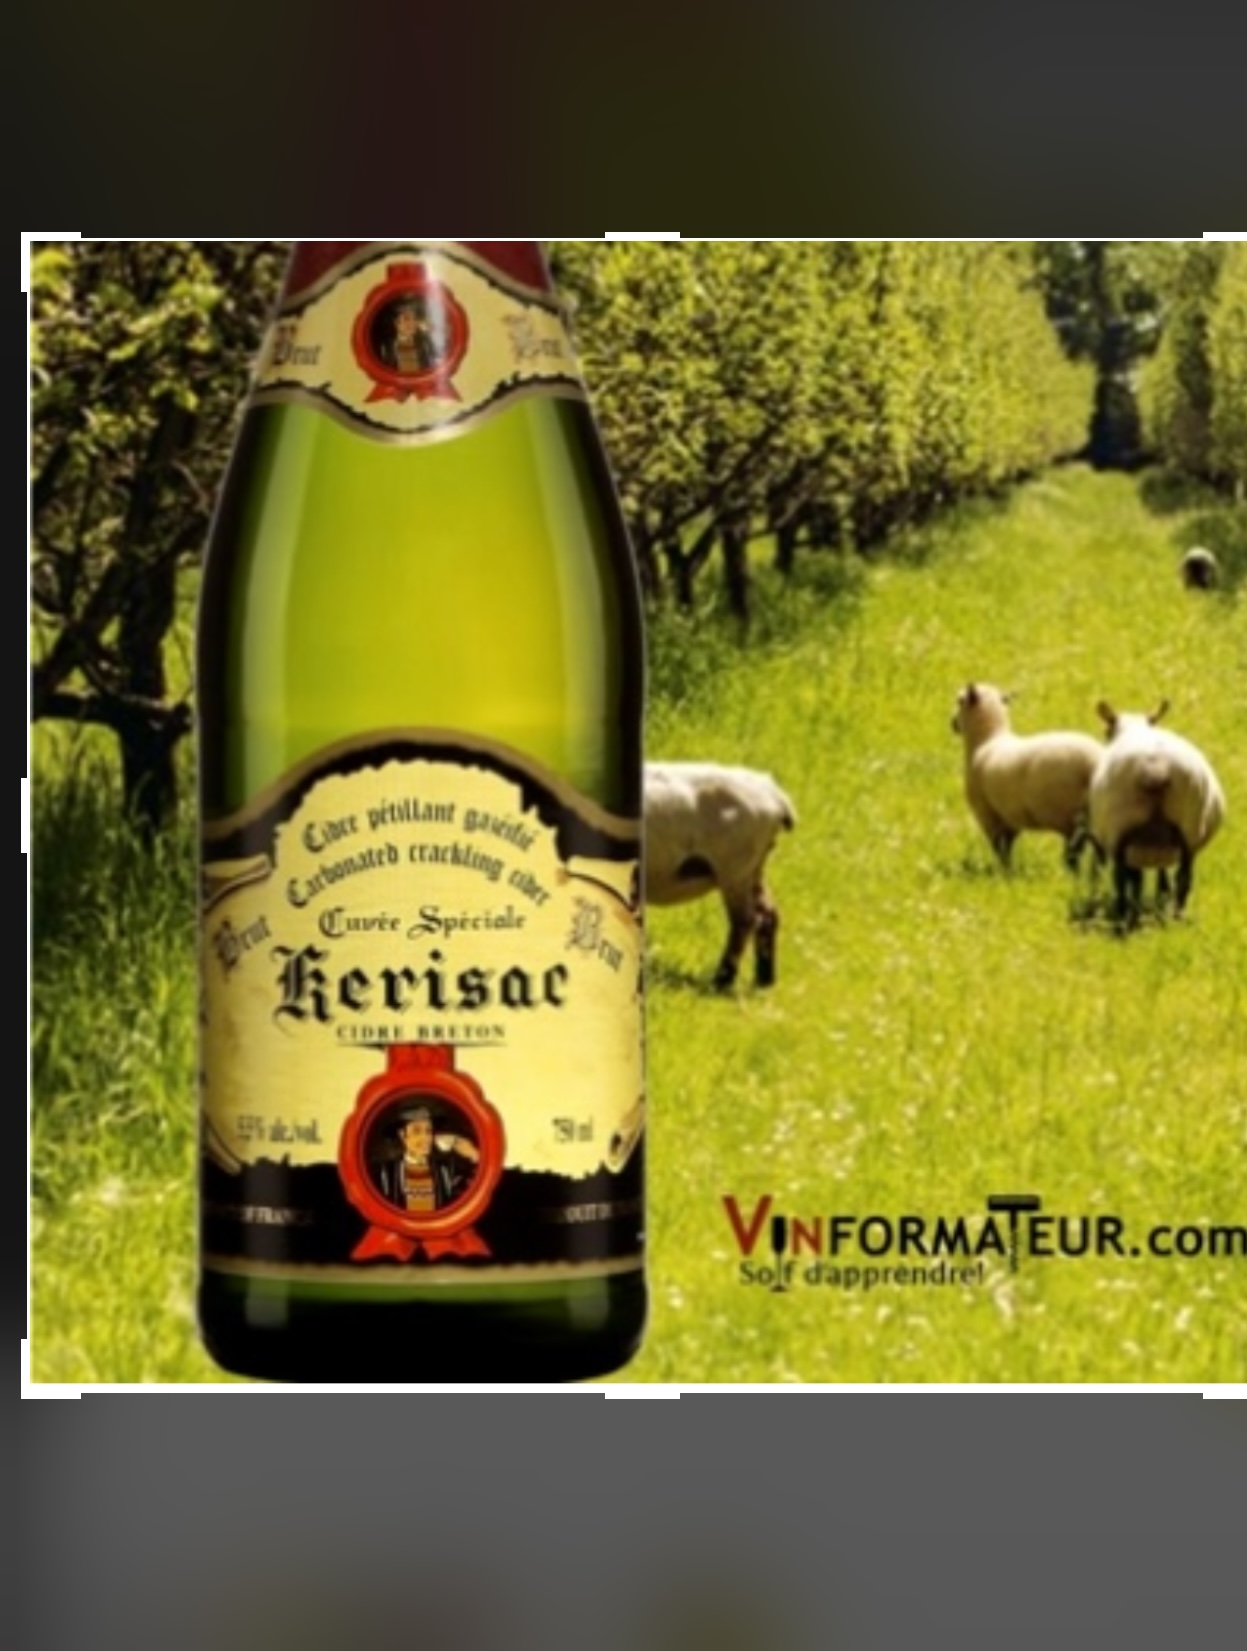 Une bouteille de champagne Vins de la semaine avec des moutons dans un verger.